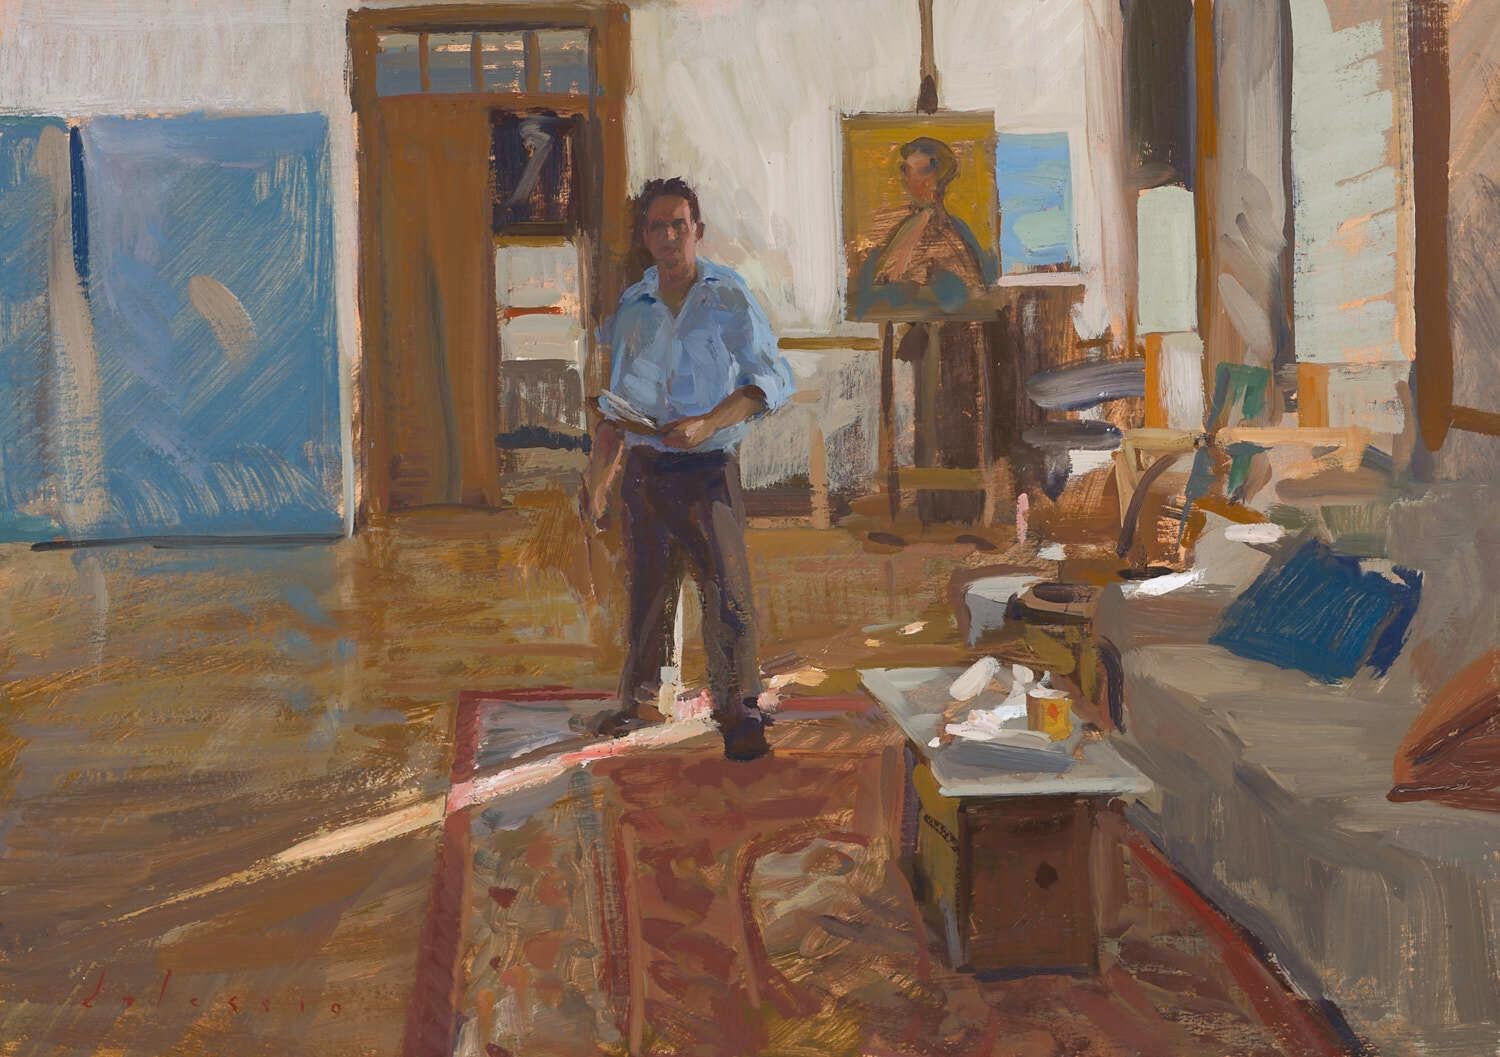 Figurative Painting Marc Dalessio - "Lockdown Self-Portrait" portrait réaliste contemporain de l'artiste dans son studio.